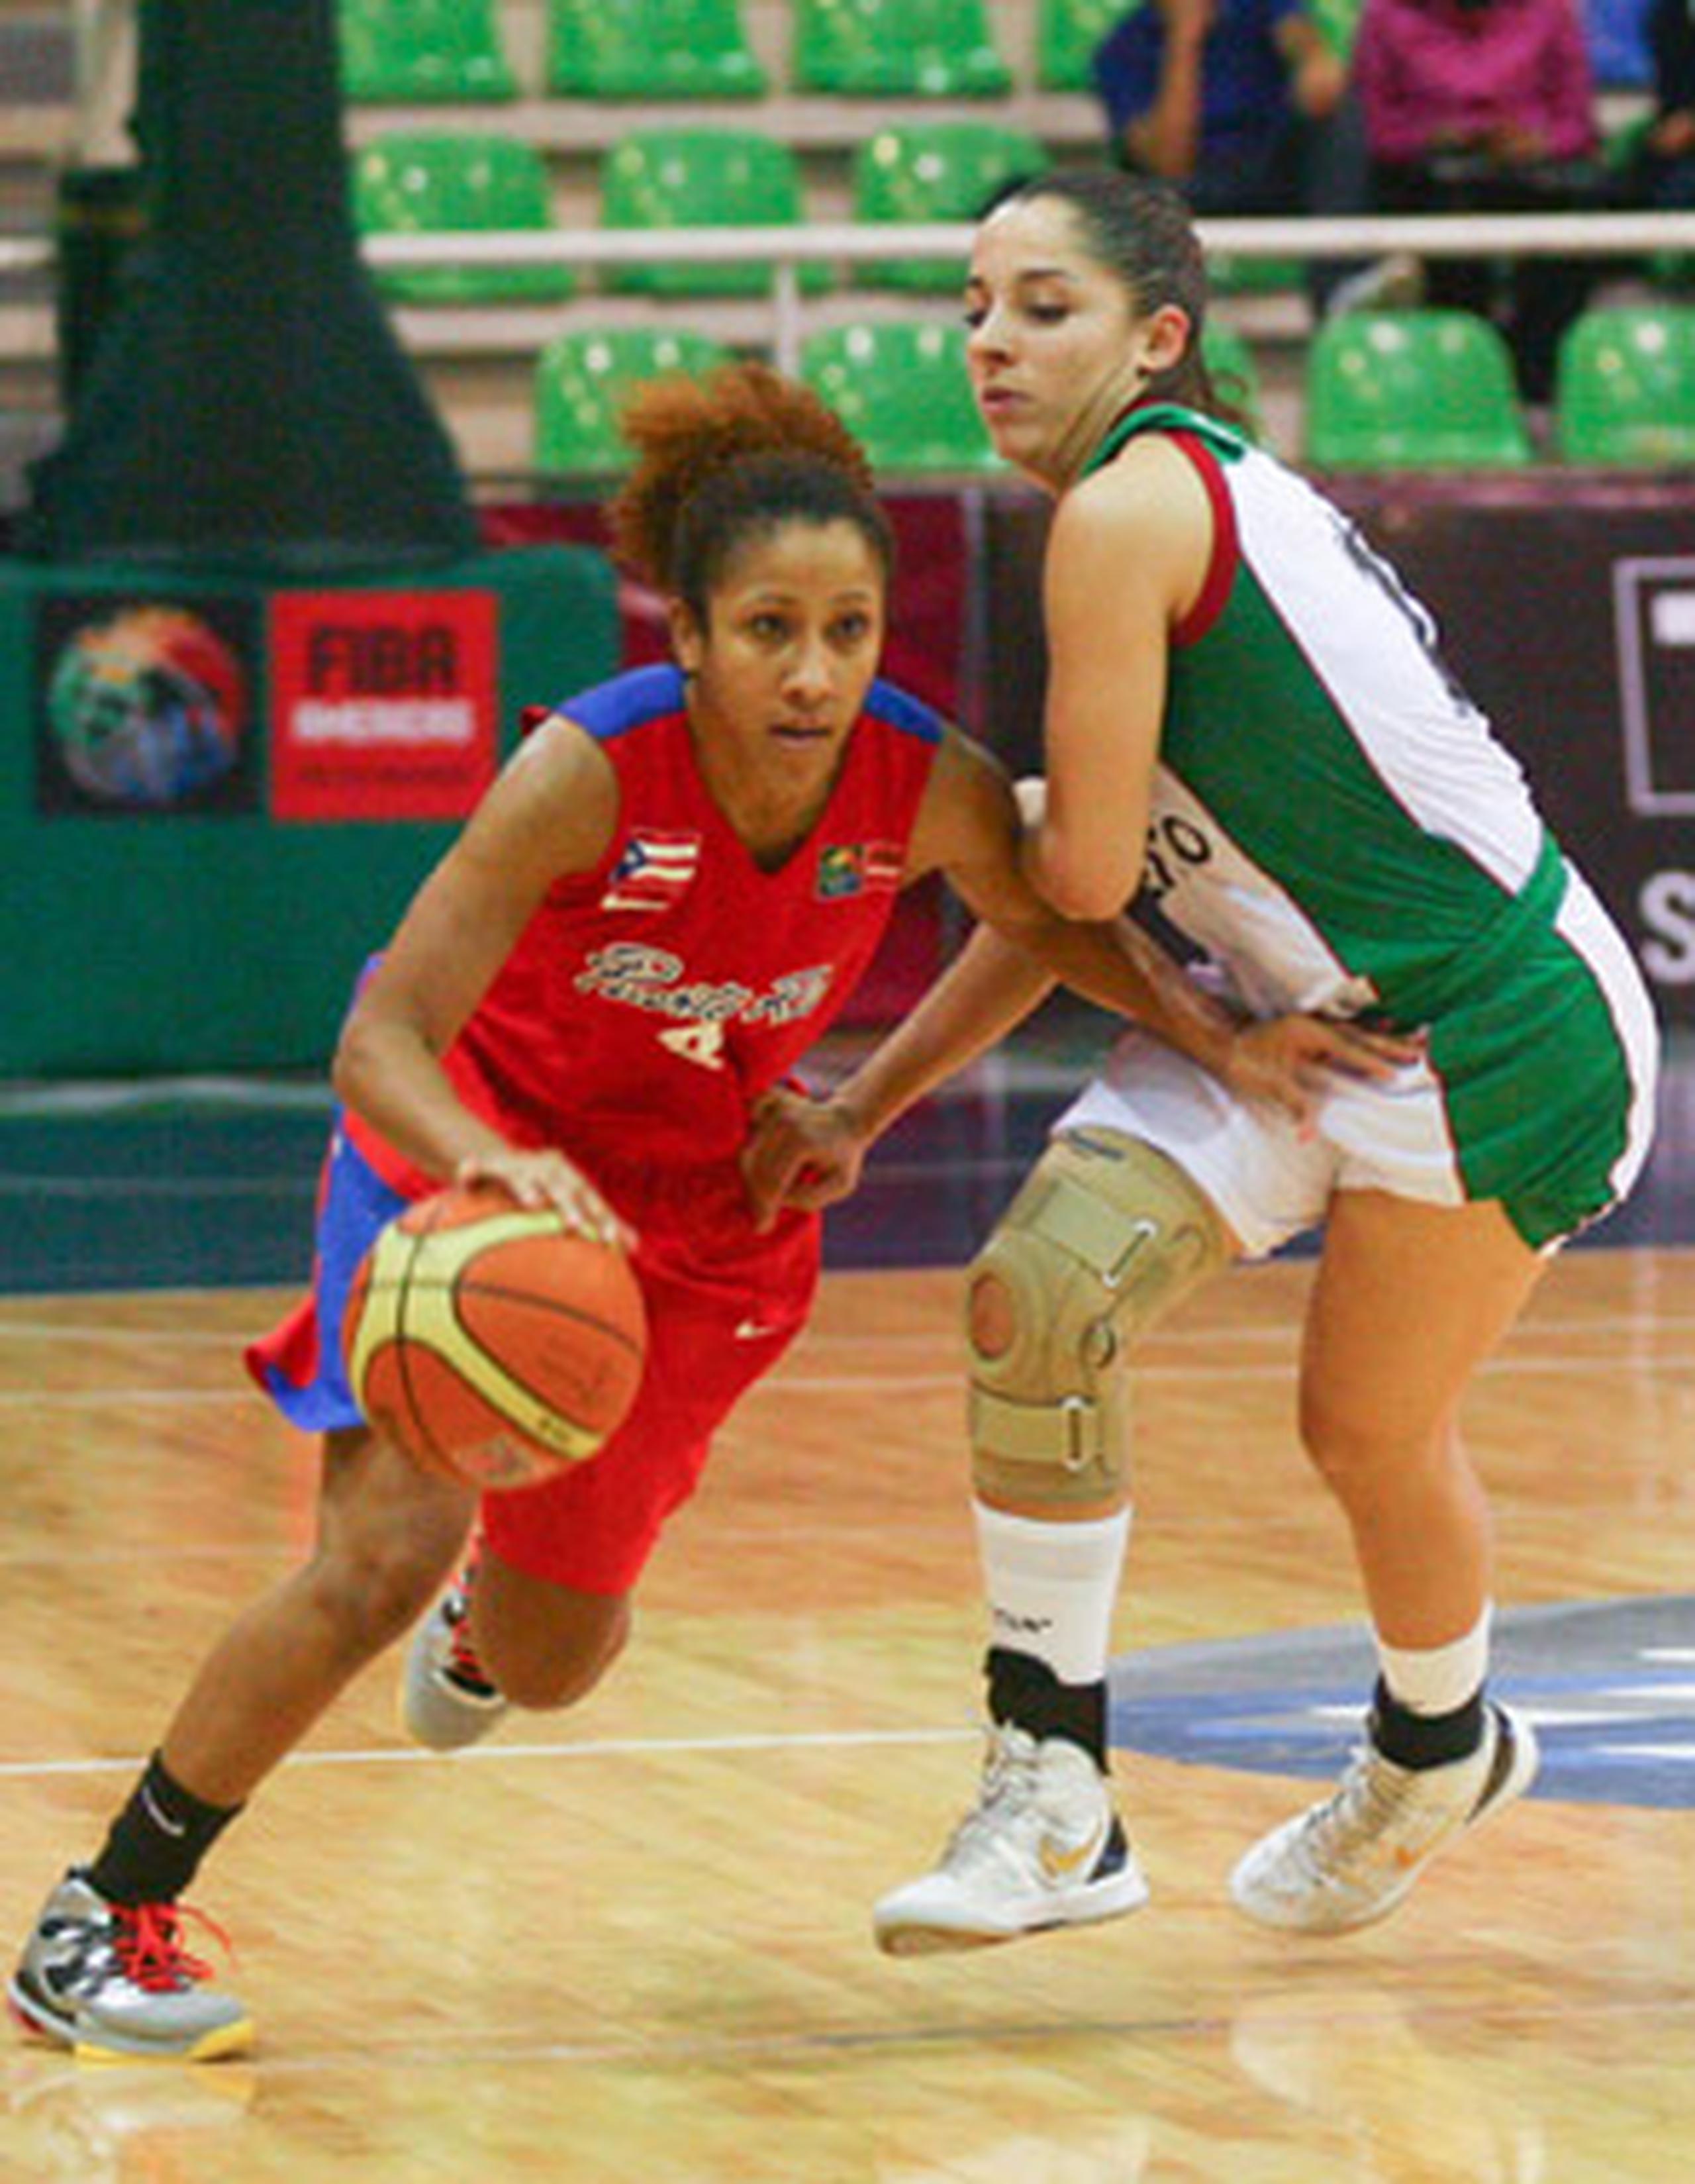 Carla Cortijo y Puerto Rico vienen de superar a México el pasado lunes por marcador de 78-60.
(FIBA Américas)